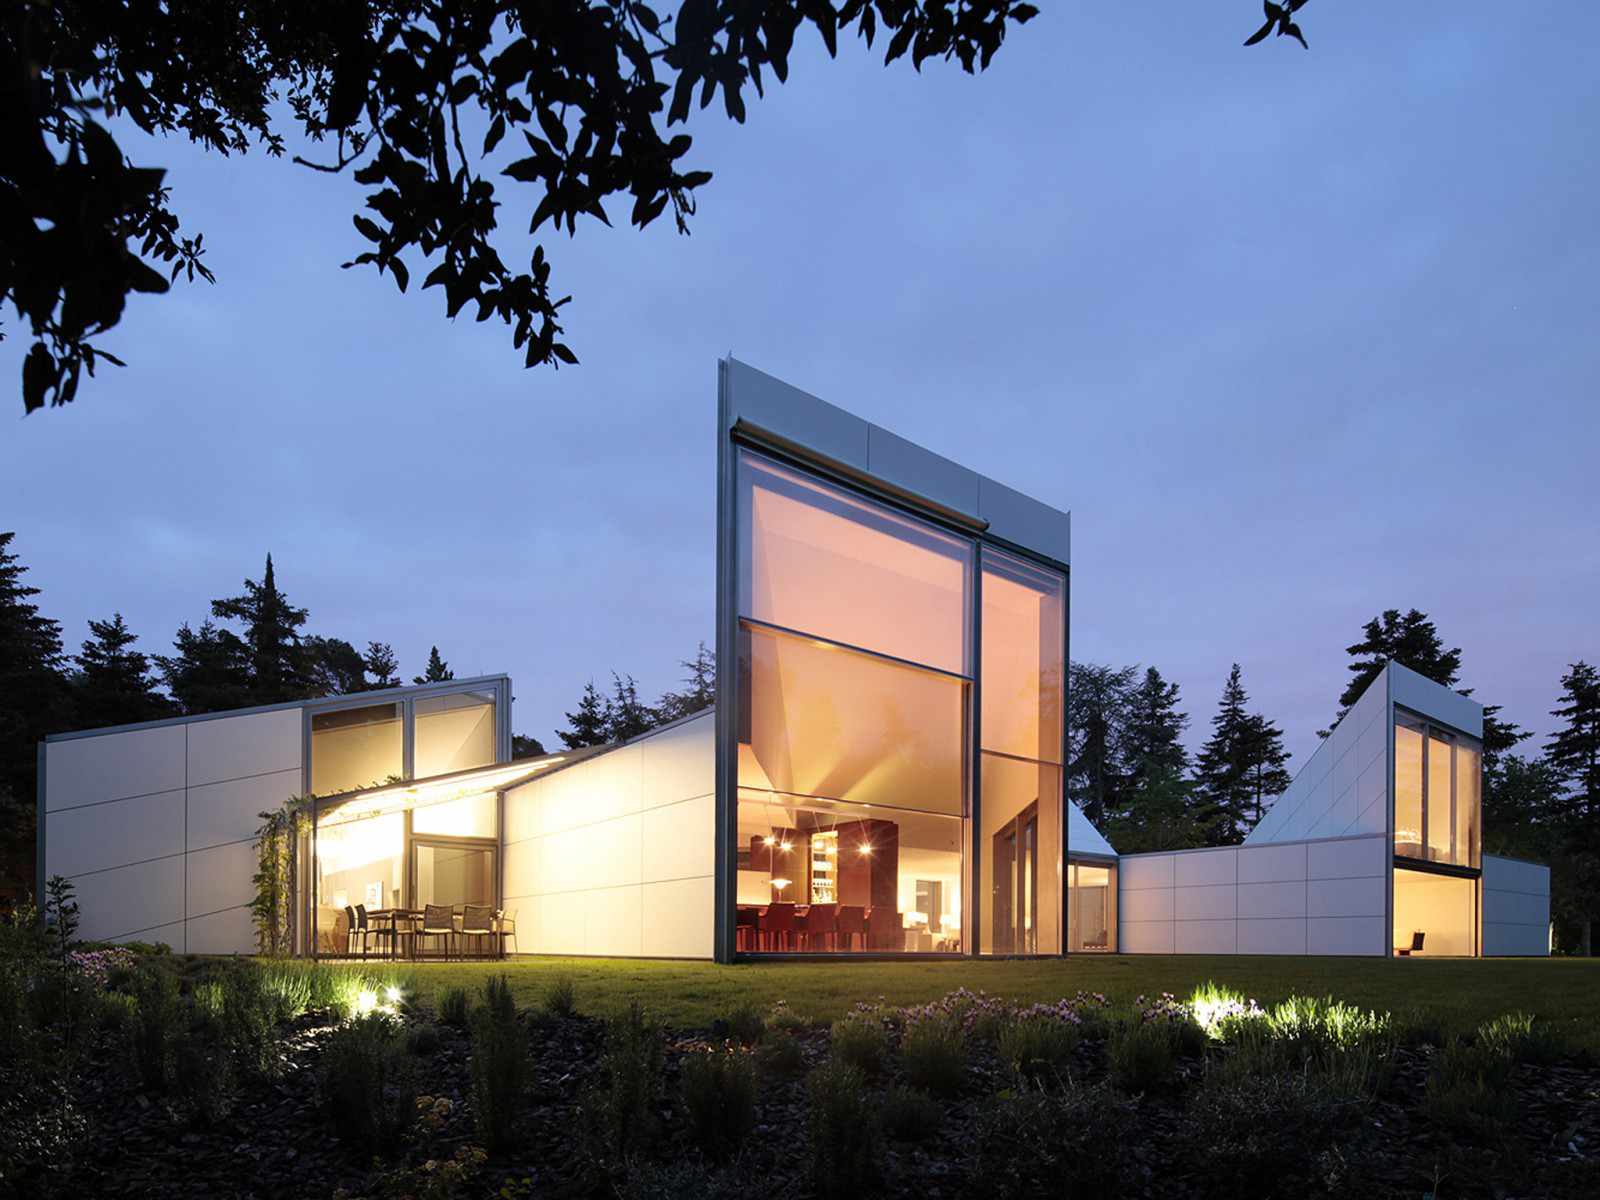 Casa moderna con grandes ventanales